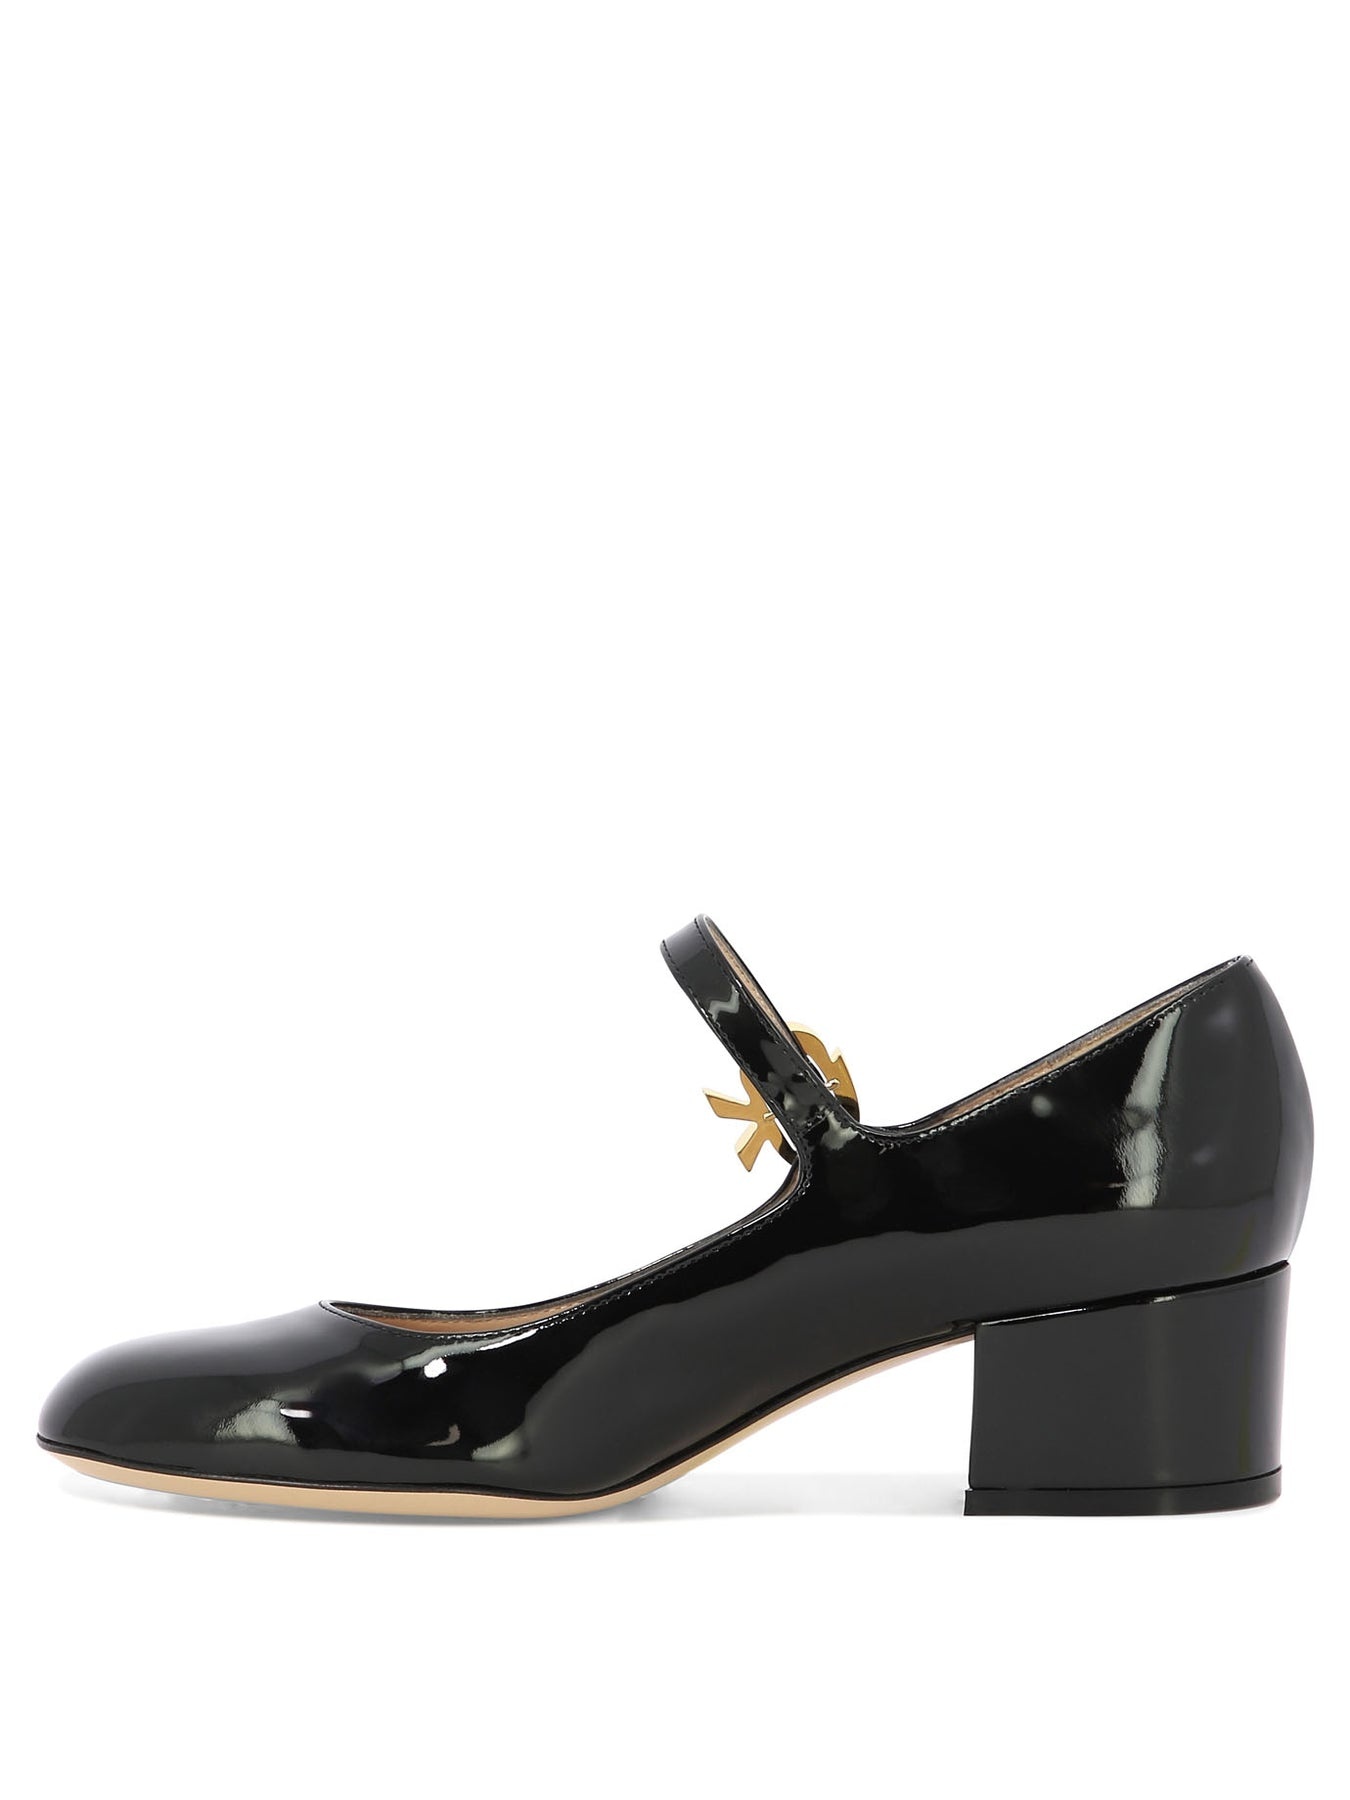 Mary Ribbon Heeled Shoes Black - 3